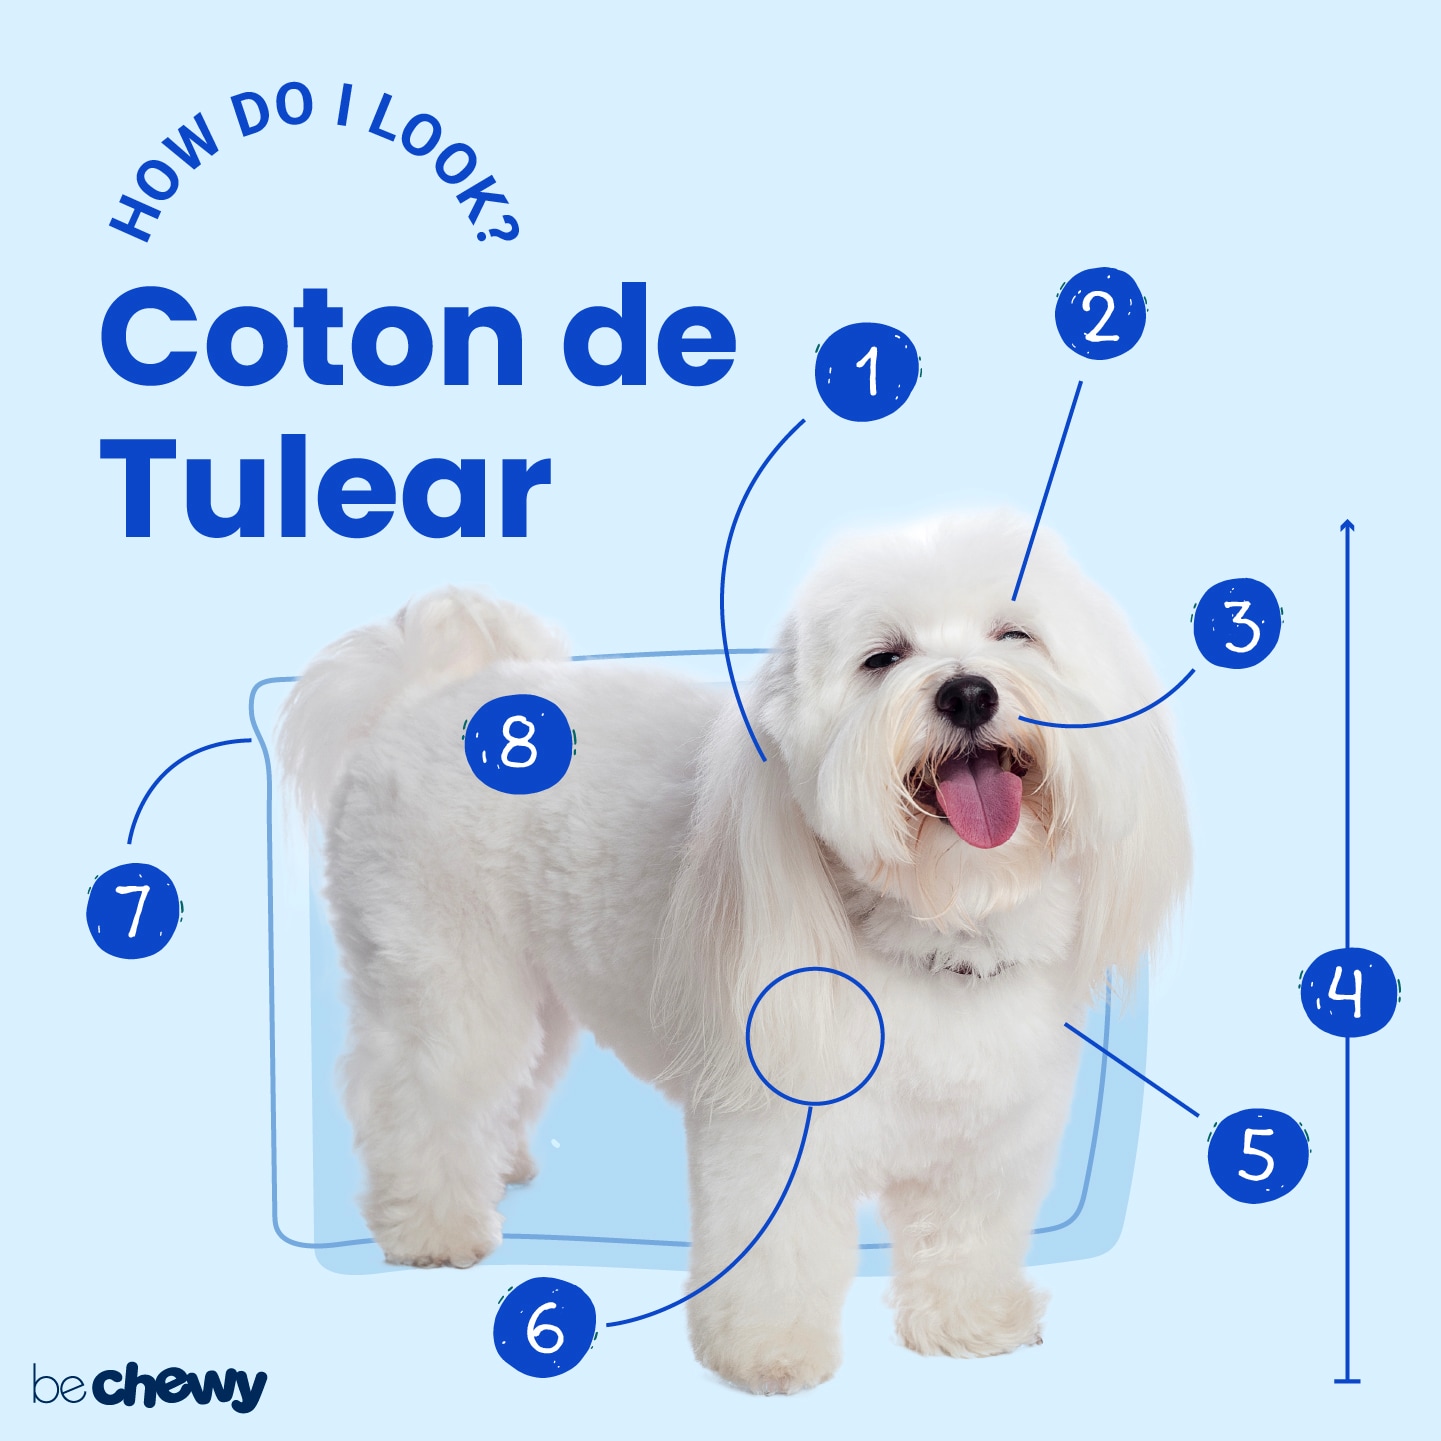 is coton de tulear a good family dog